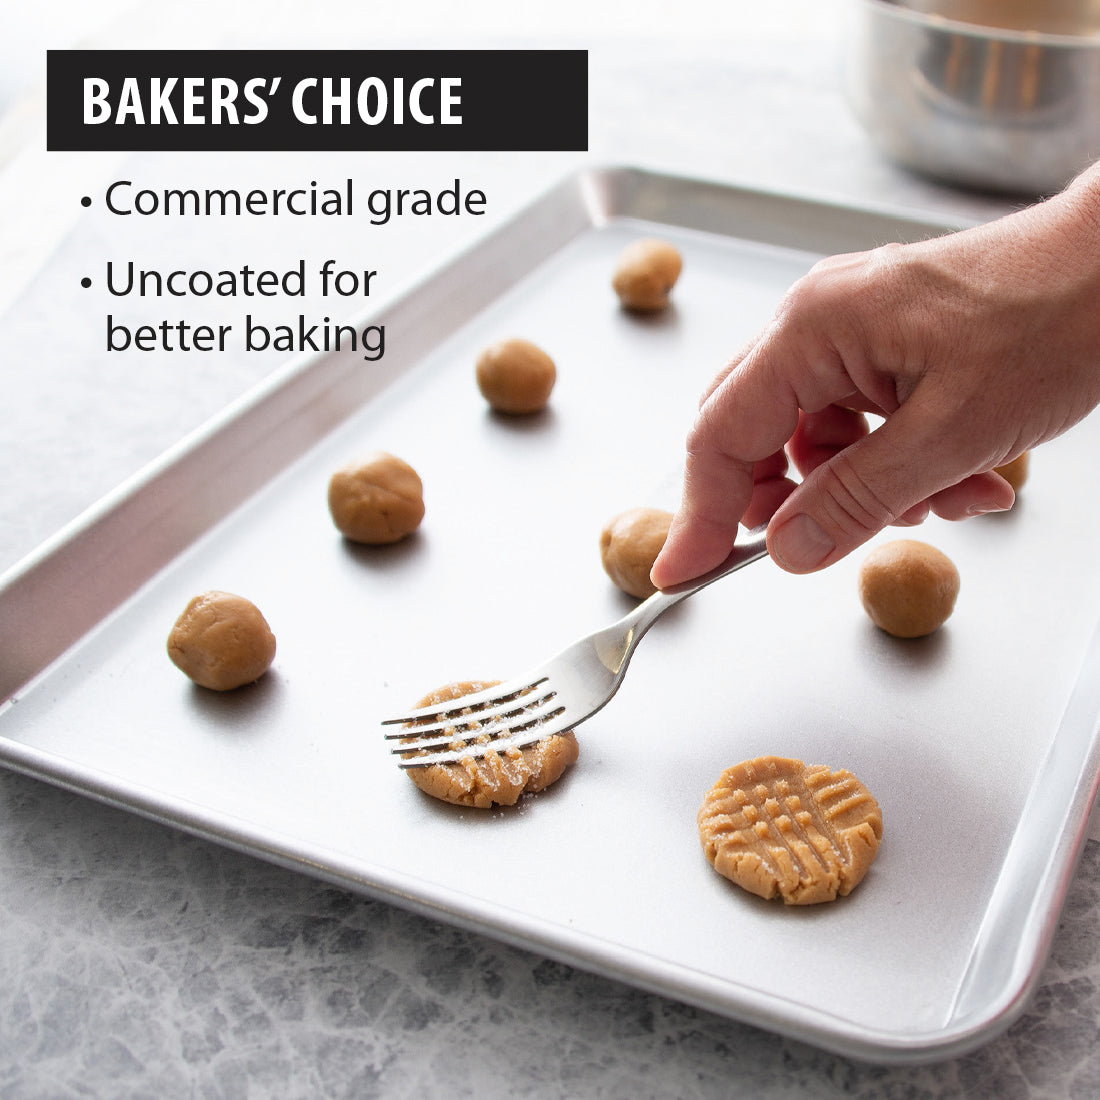 USA Pan Half Sheet Pan Bakeware Review - Consumer Reports